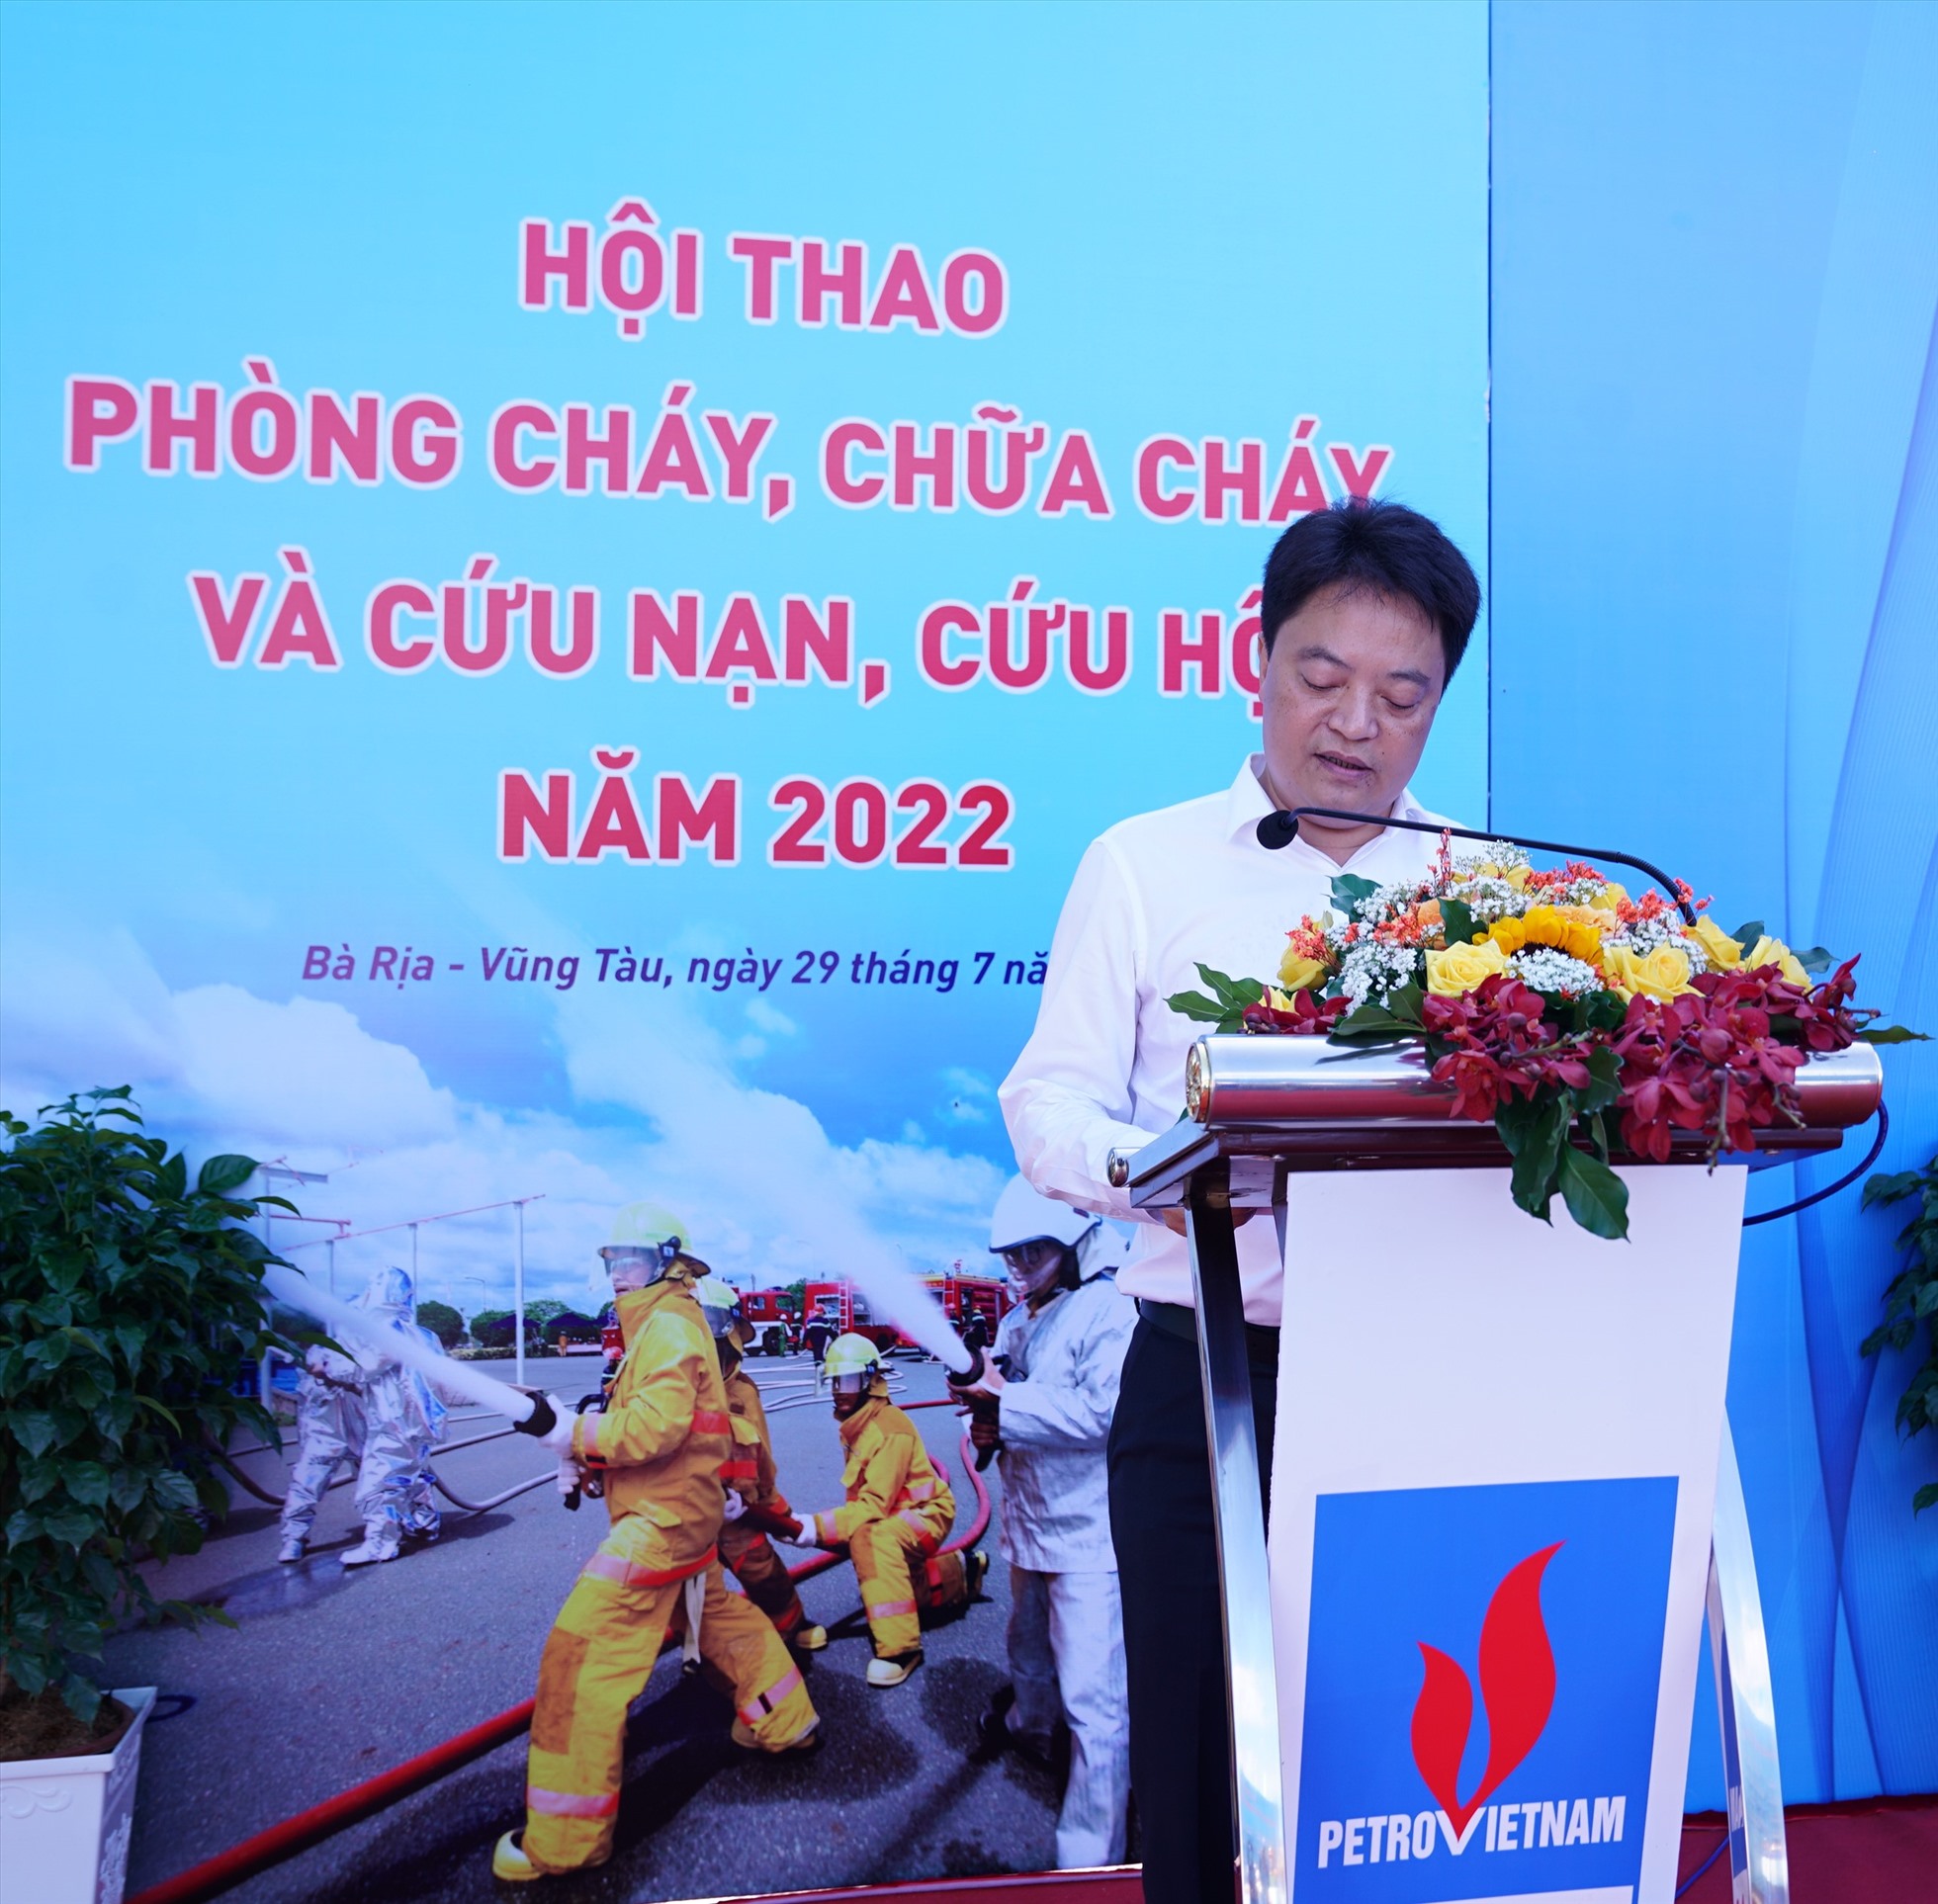 Ông Hoàng Văn Quang – Tổng giám đốc PV GAS phát biểu khai mạc Hội thao. Ảnh: PV GAS